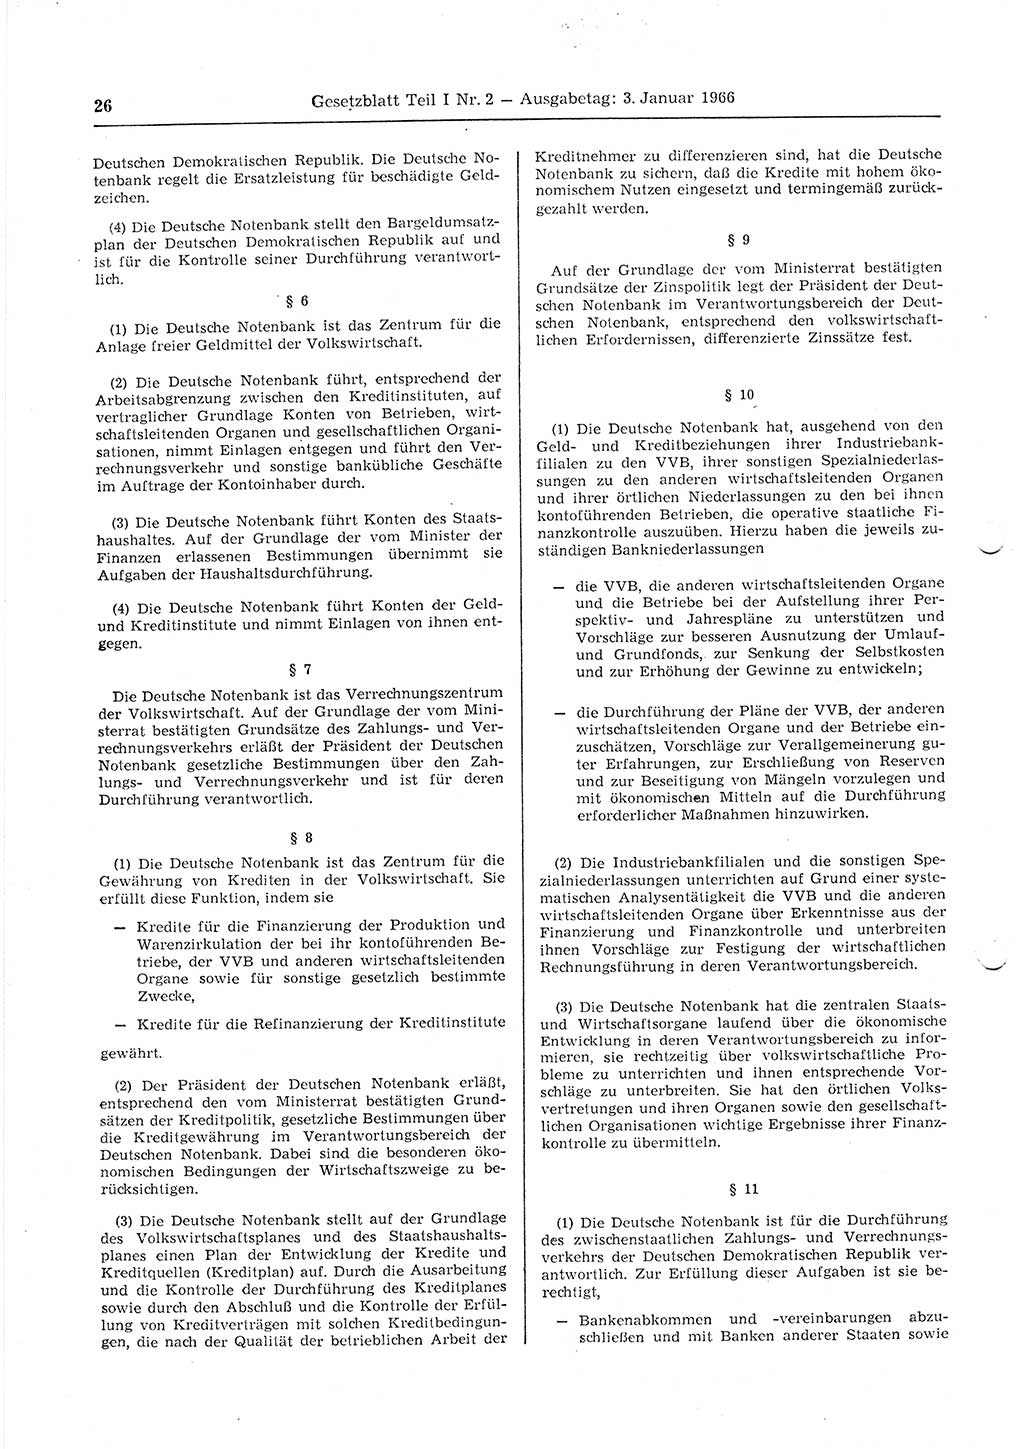 Gesetzblatt (GBl.) der Deutschen Demokratischen Republik (DDR) Teil Ⅰ 1966, Seite 26 (GBl. DDR Ⅰ 1966, S. 26)